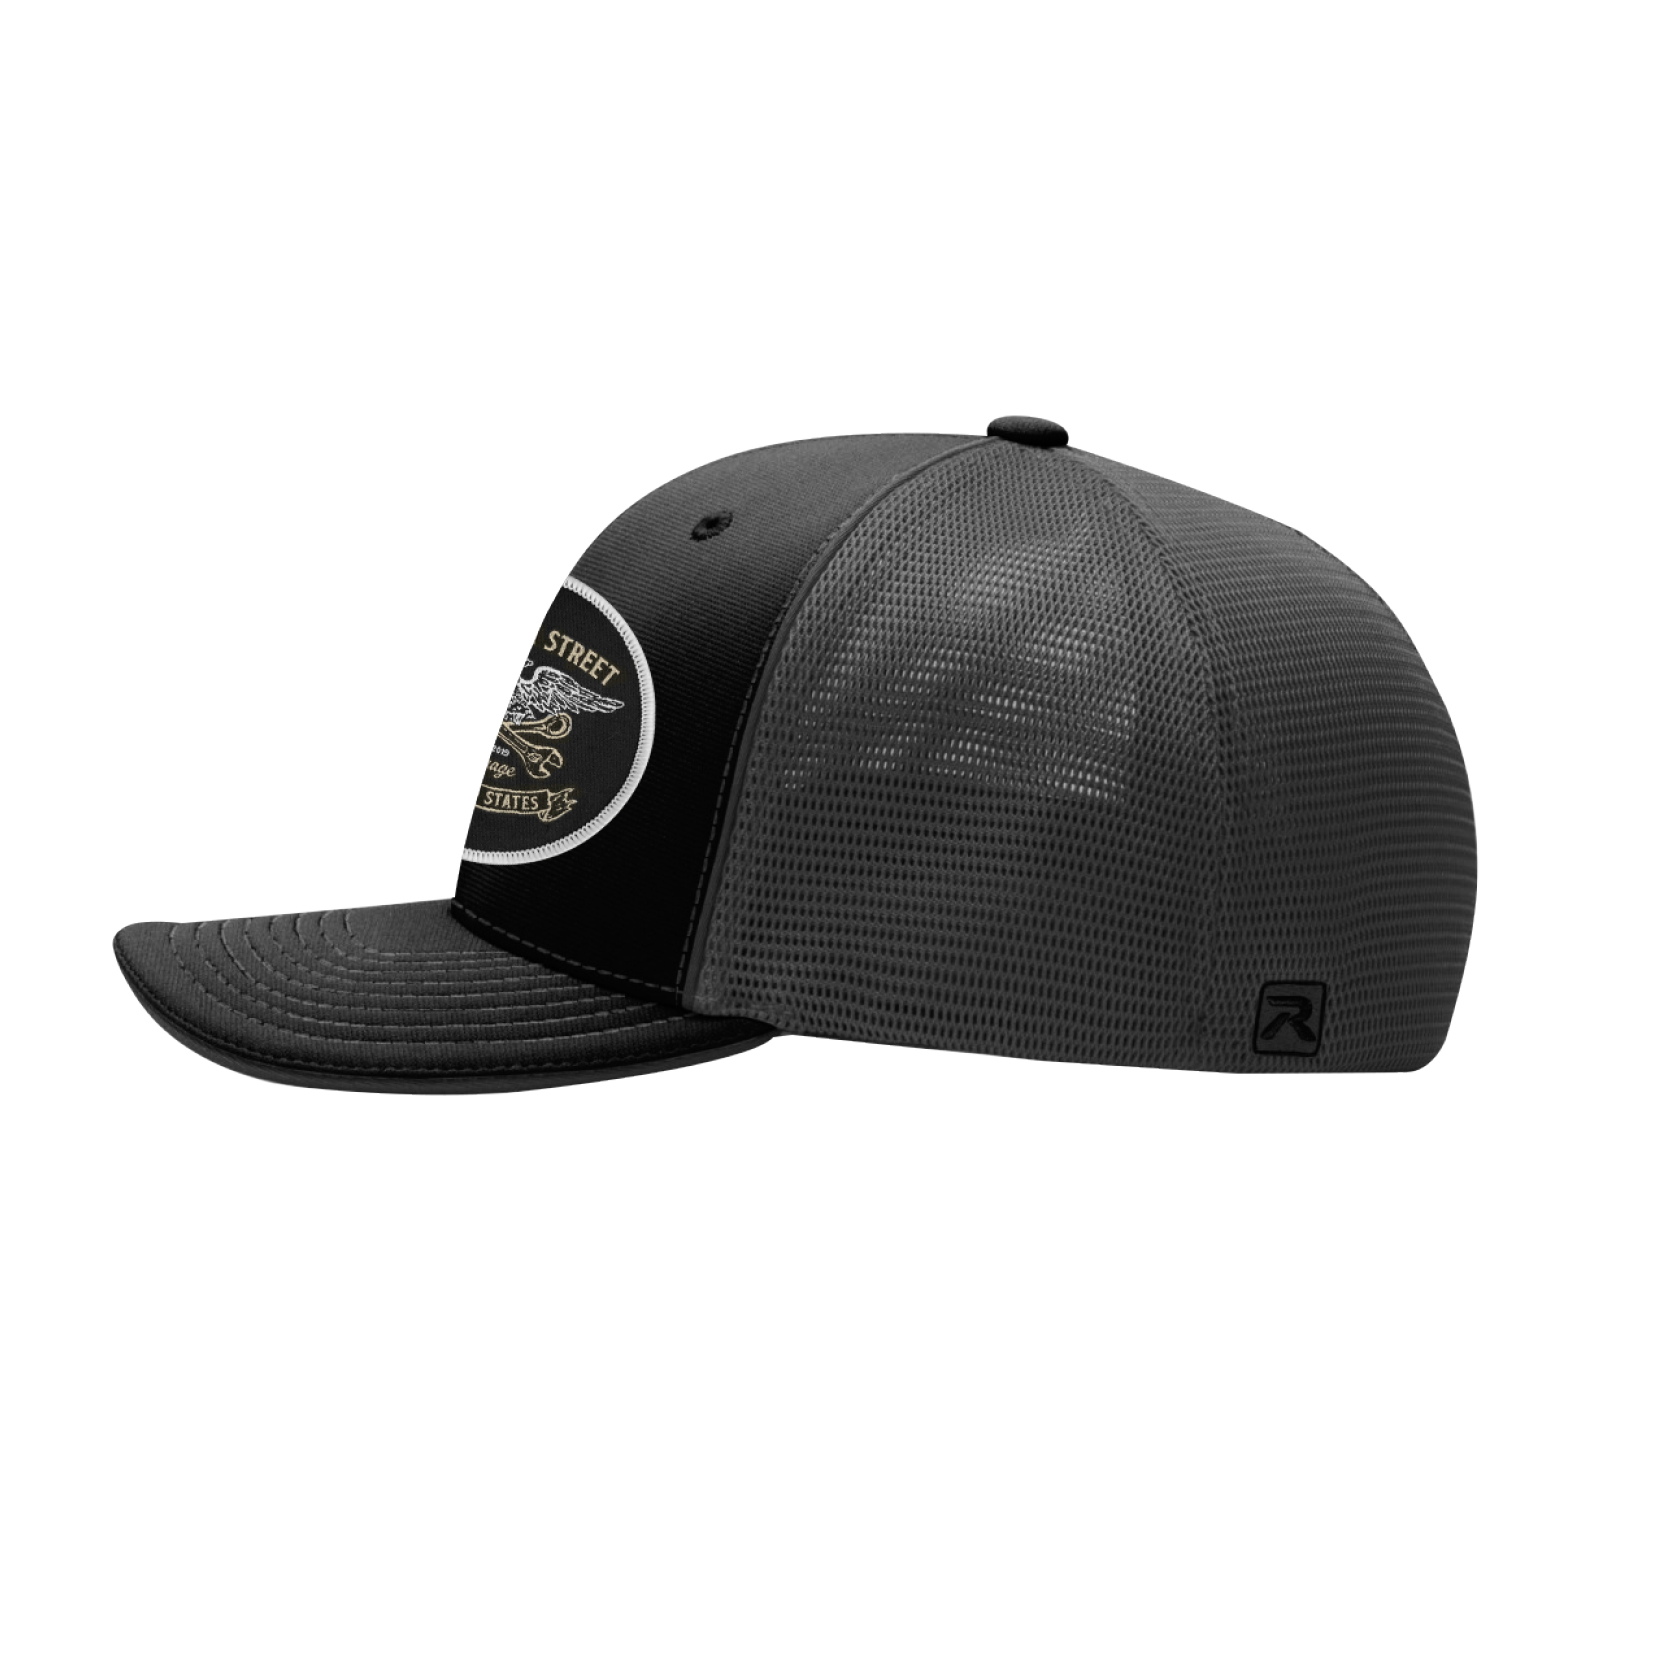 The Freedom Grey/Black Flexfit Hat